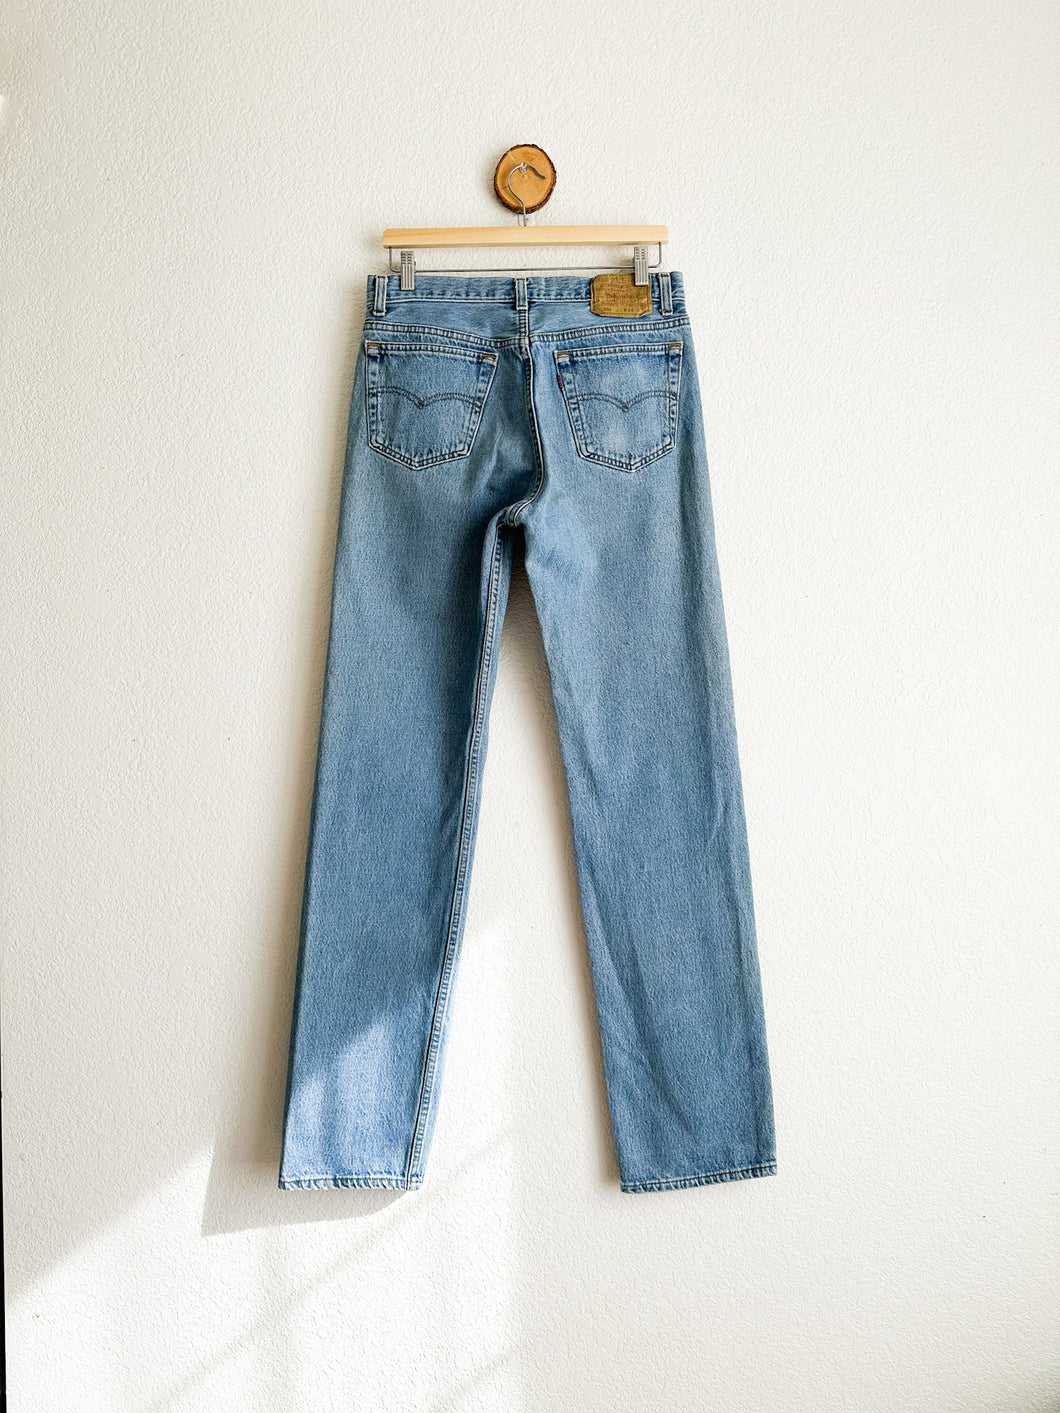 Vintage Levi's 501 Jeans - 30.5